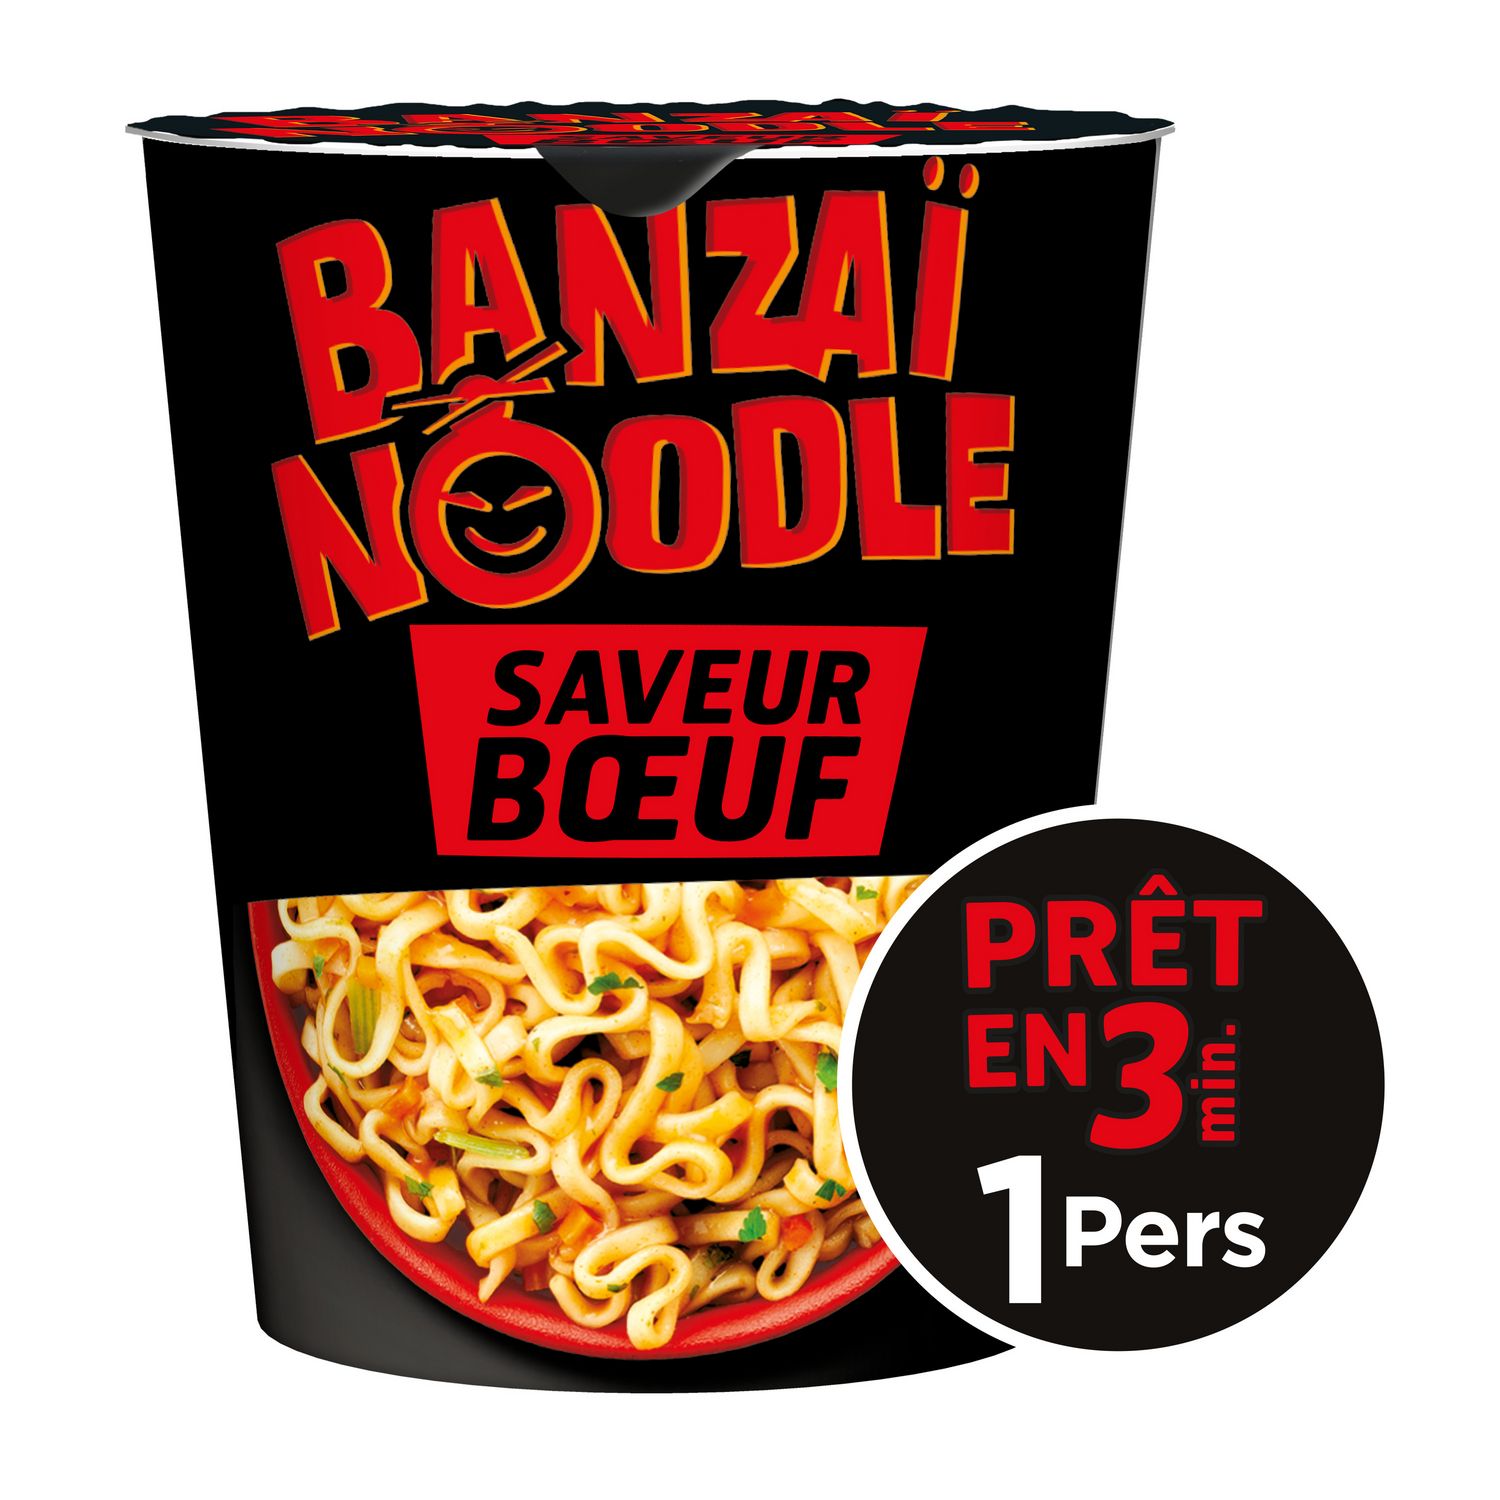 1 sachet de Banzaï Noodle saveur boeuf de Lustucru contient 4,9 dosettes de  sel soit 3,9g